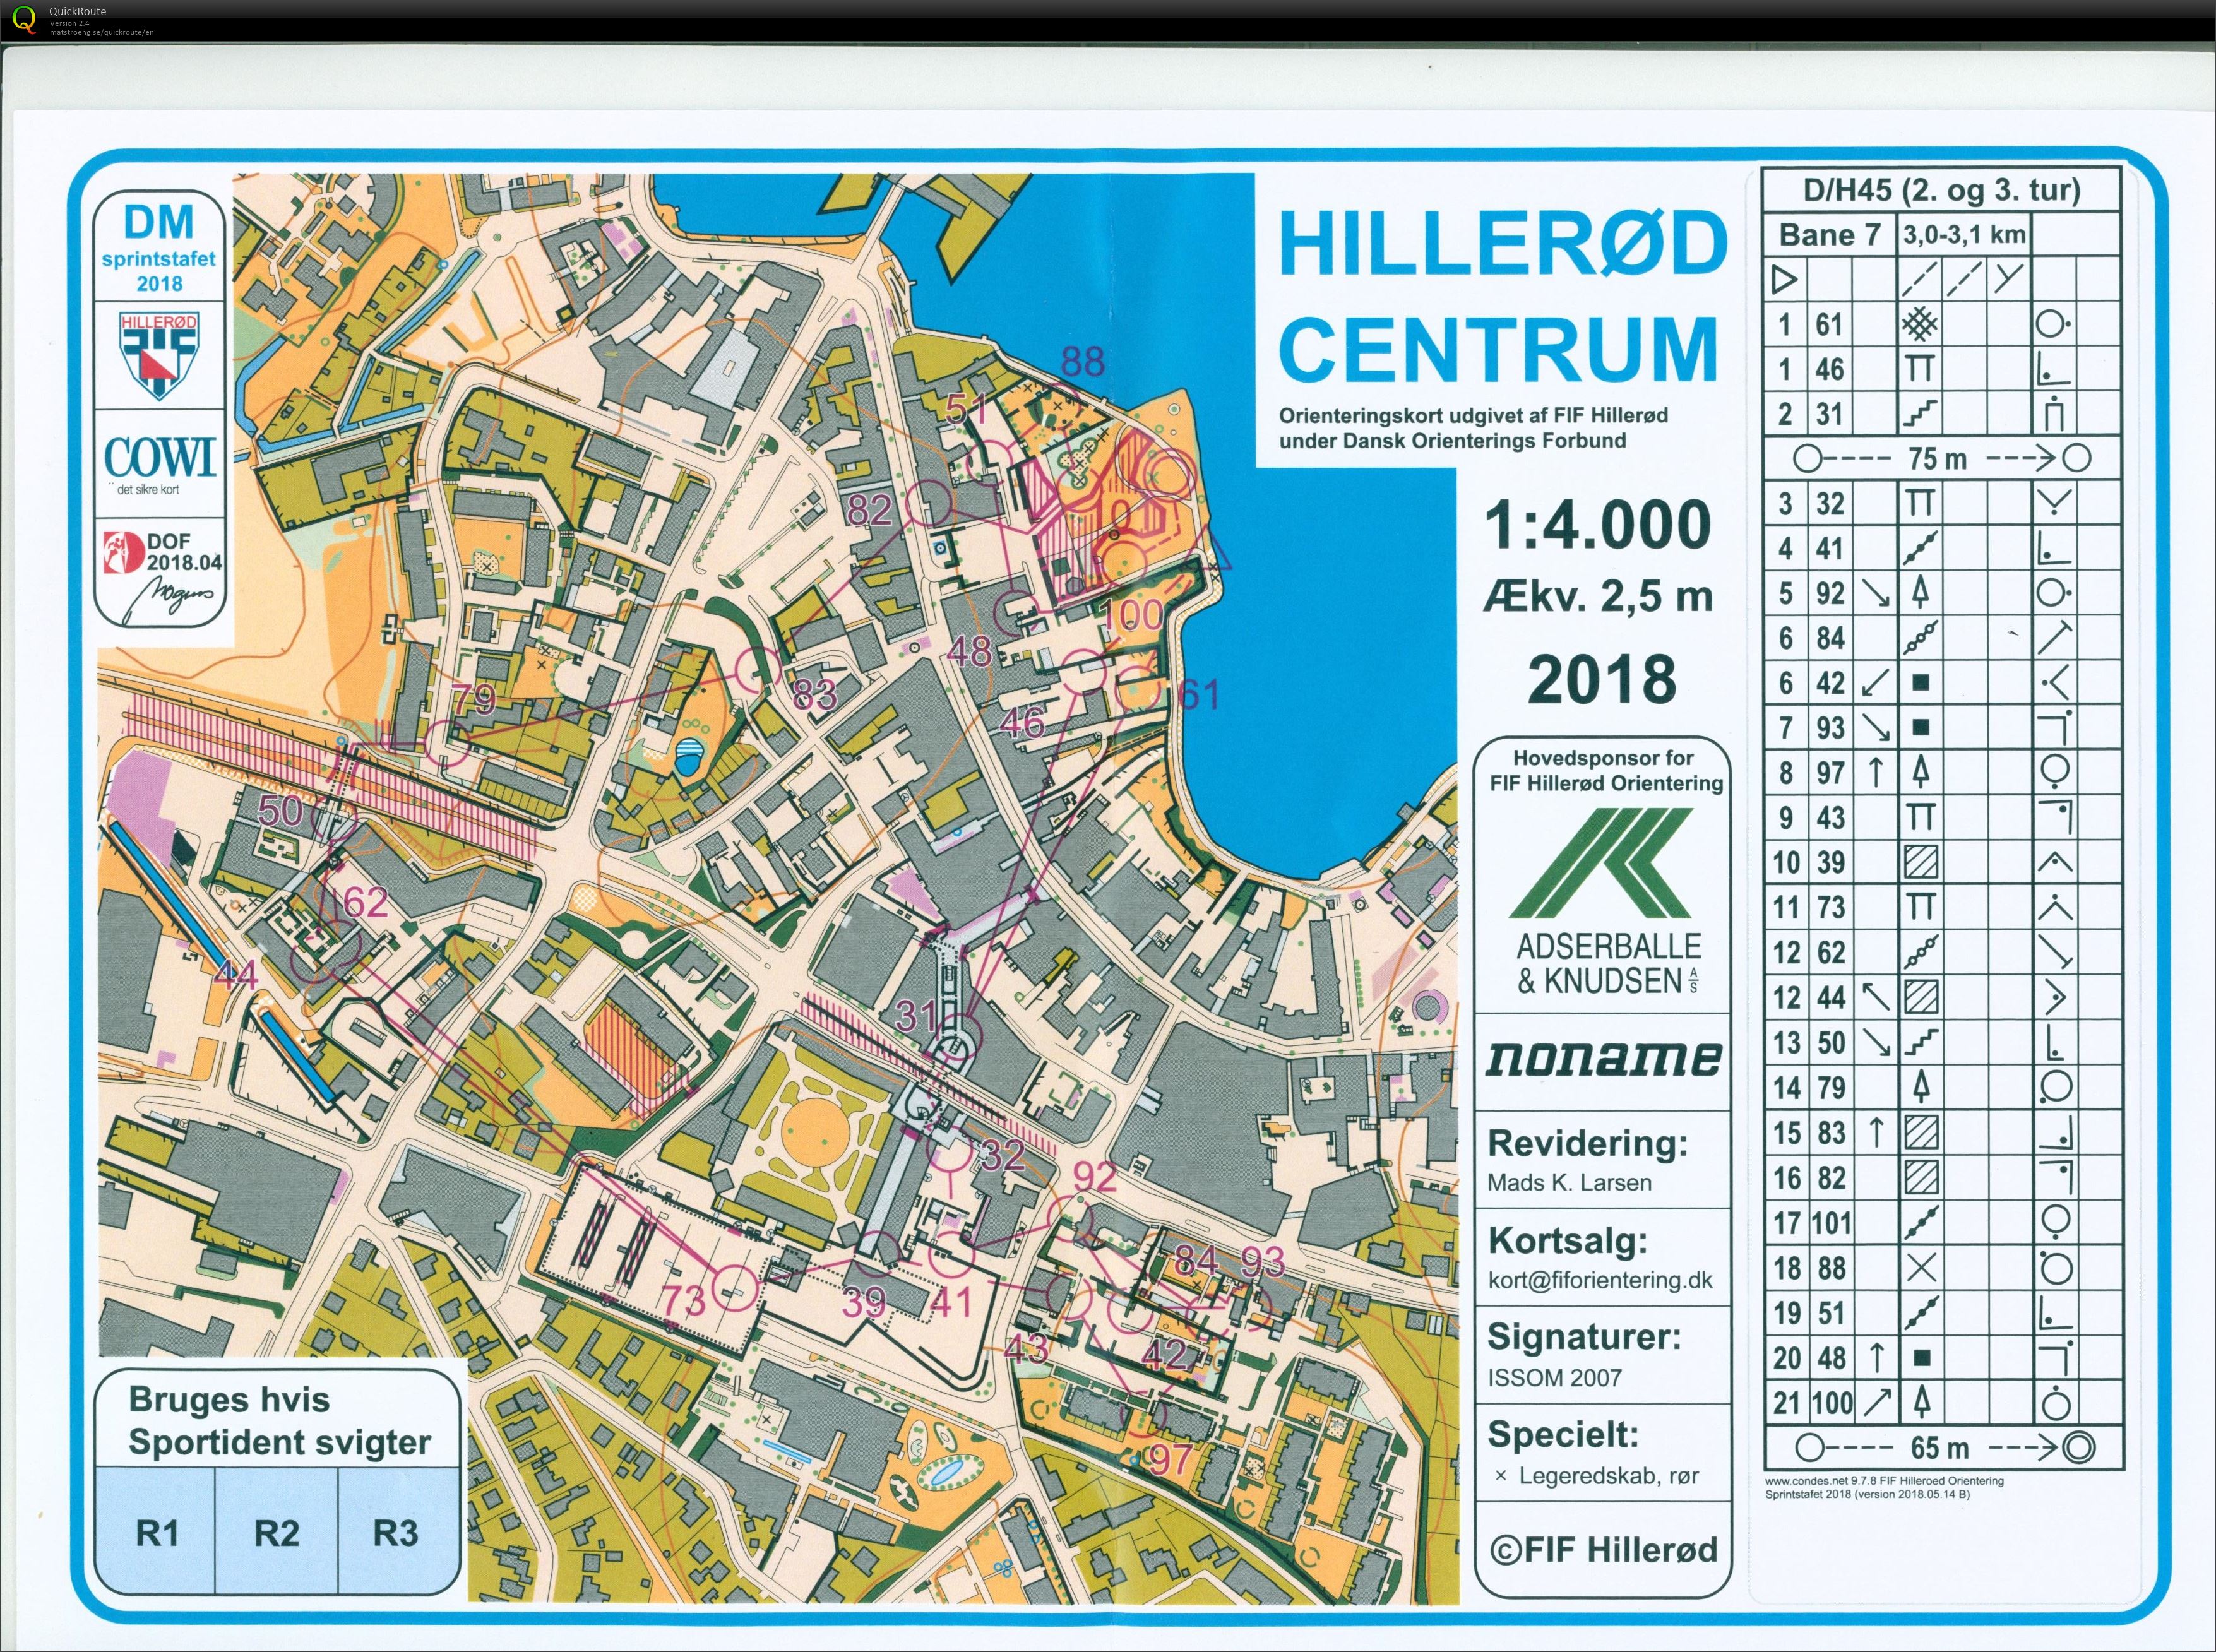 Hillerød sprint stafet D/H45 (27/05/2018)